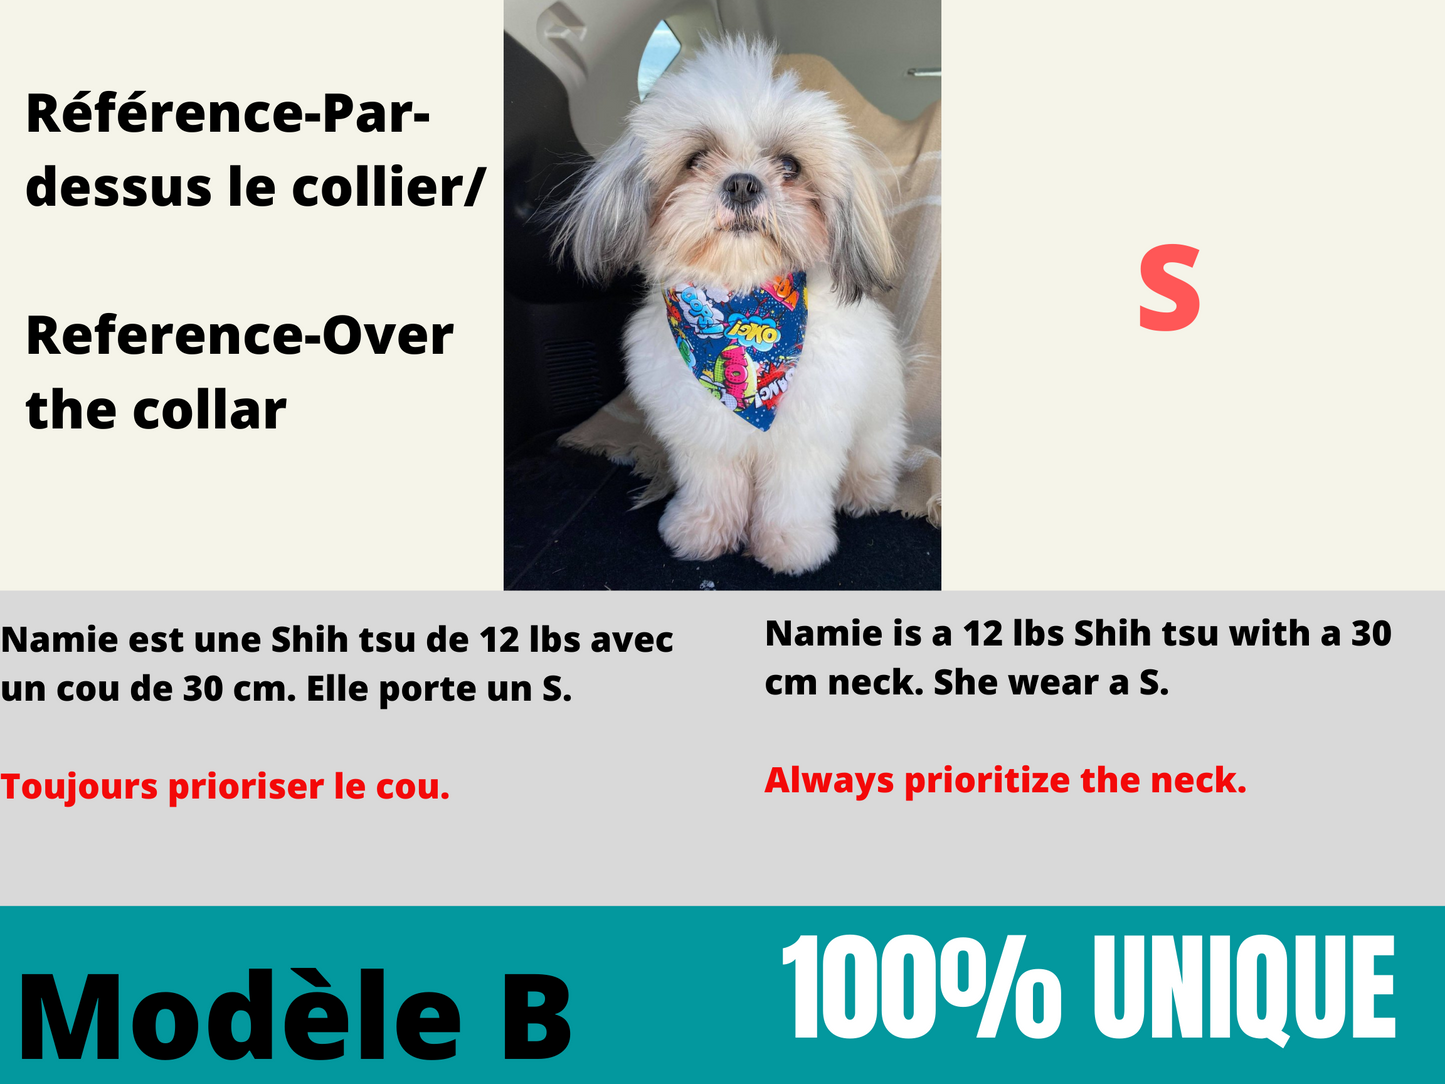 Modèle B-Chat et chien-Foulard par-dessus le collier-Carrés multicolores/Bandana over the collar-Multicolored squares